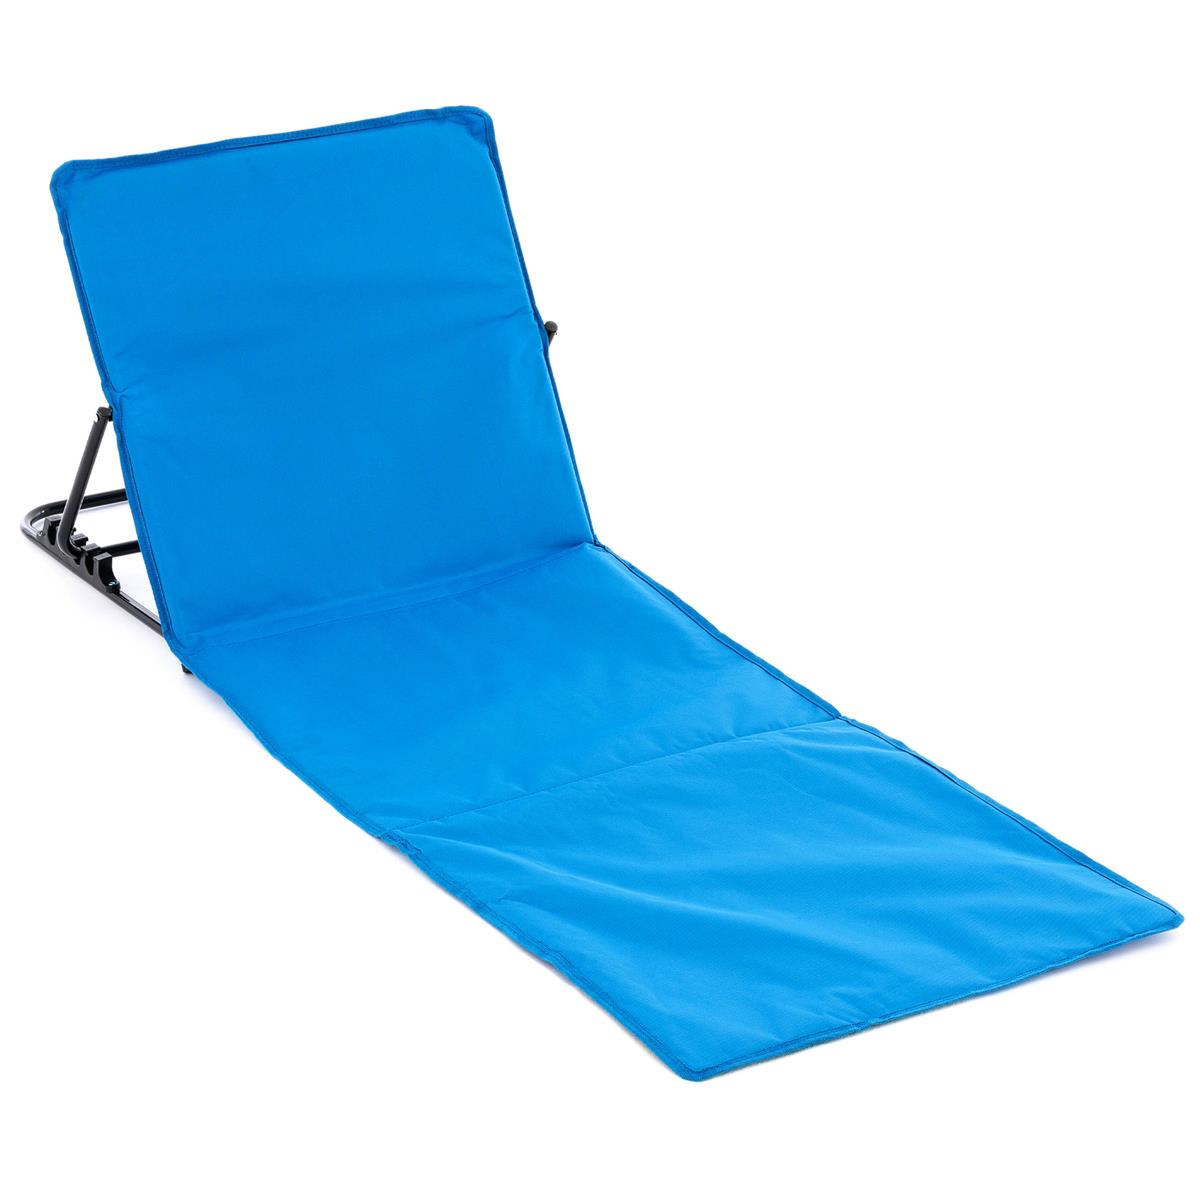 Strandmatte B-WARE Beachmatte gepolstert faltbar verstellbare Rückenlehne blau